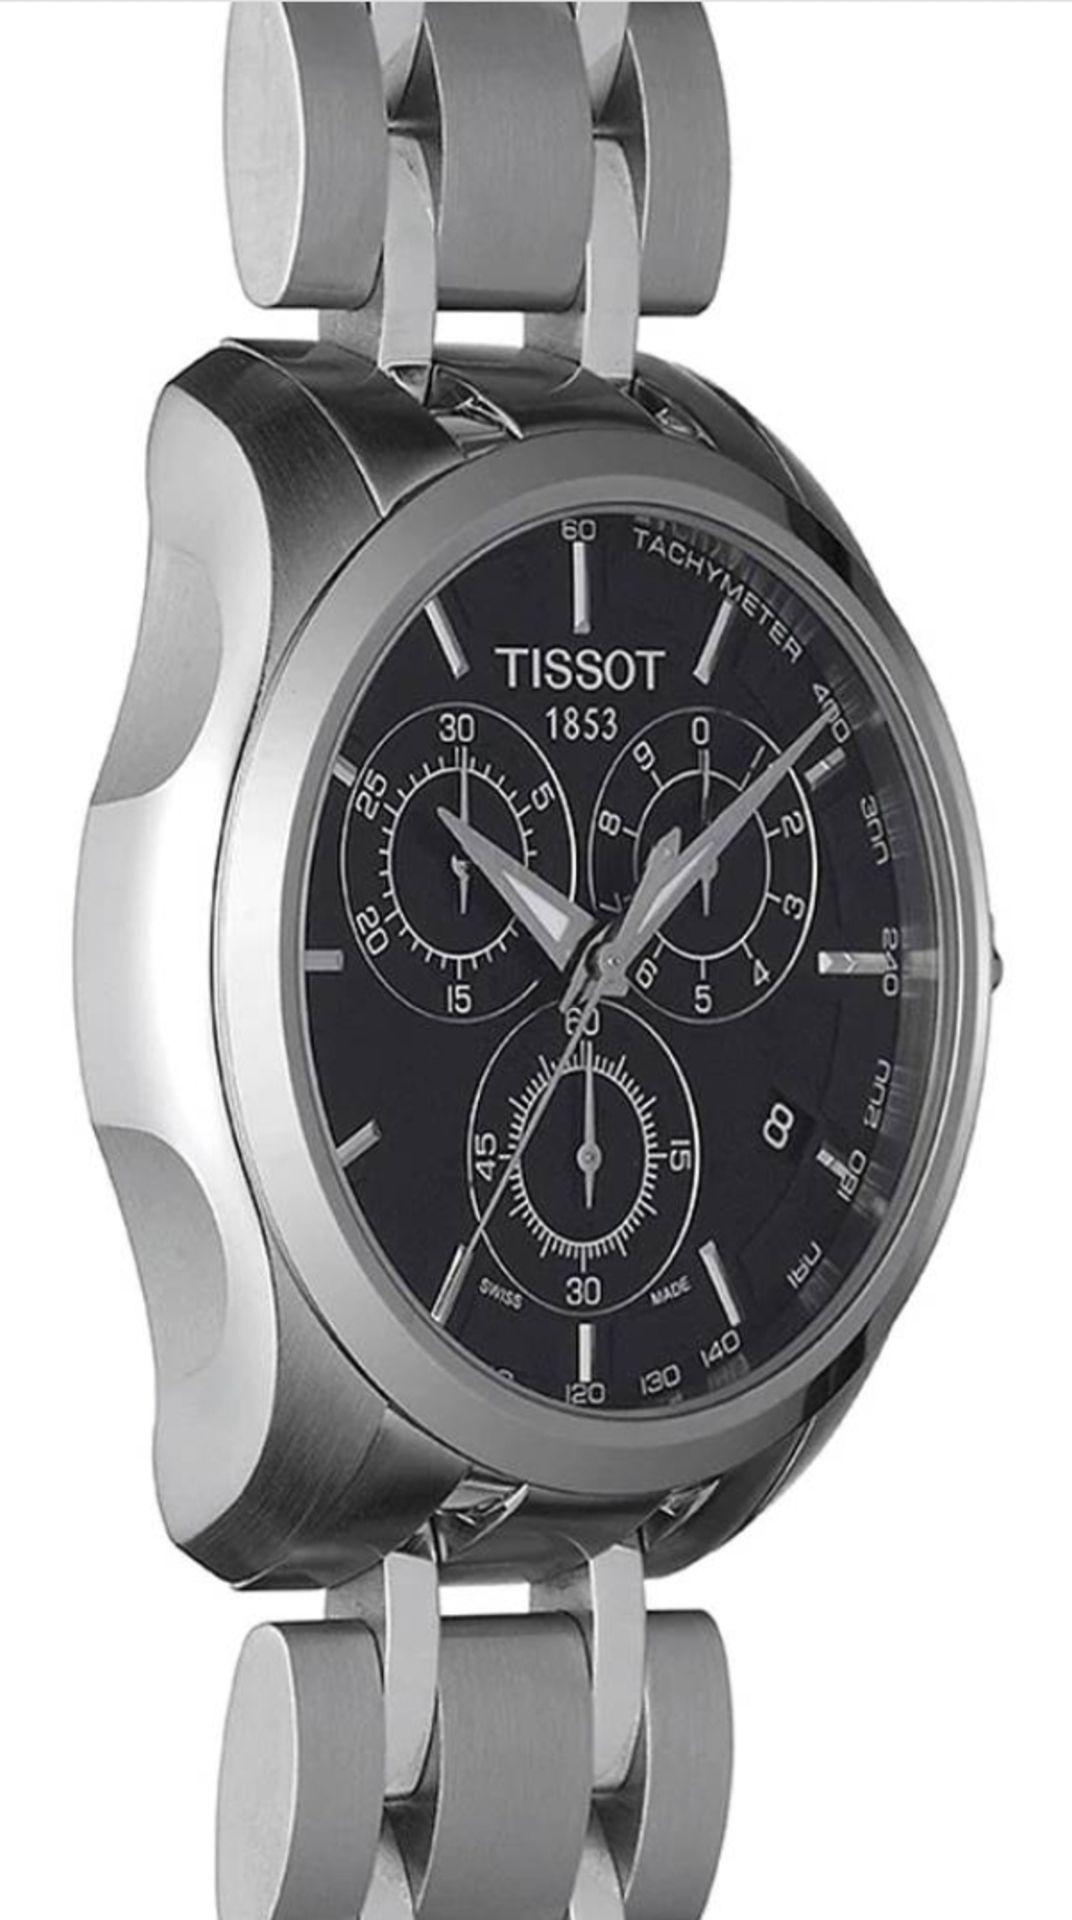 TISSOT T035.617.11.051.00 Men's Couturier Quartz Chronograph Watch - Image 3 of 10